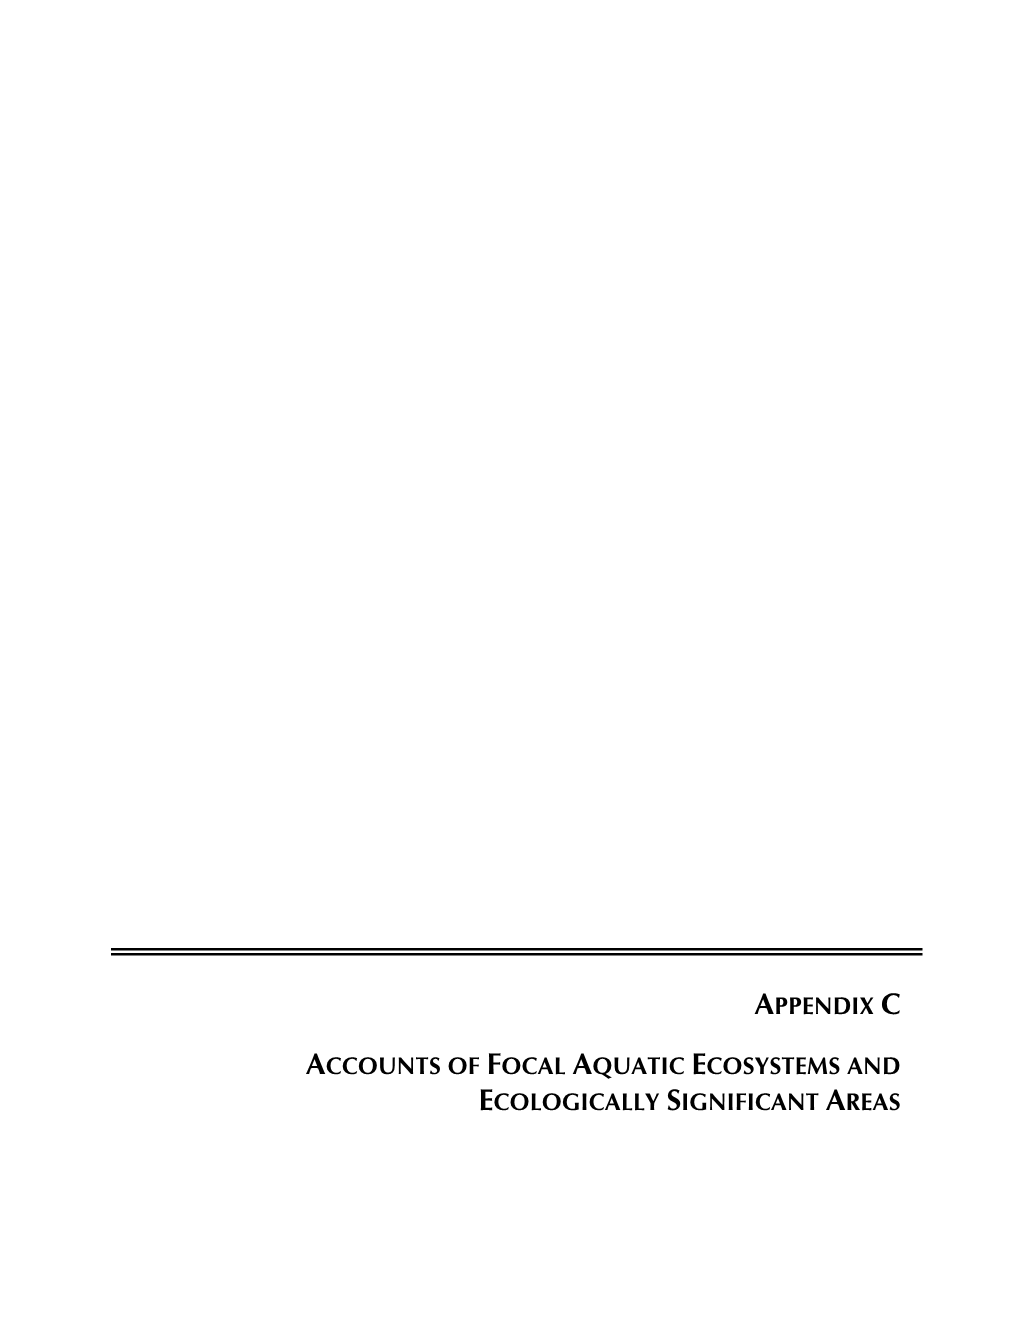 Appendix C: Accounts of Focal Aquatic Ecosystems And